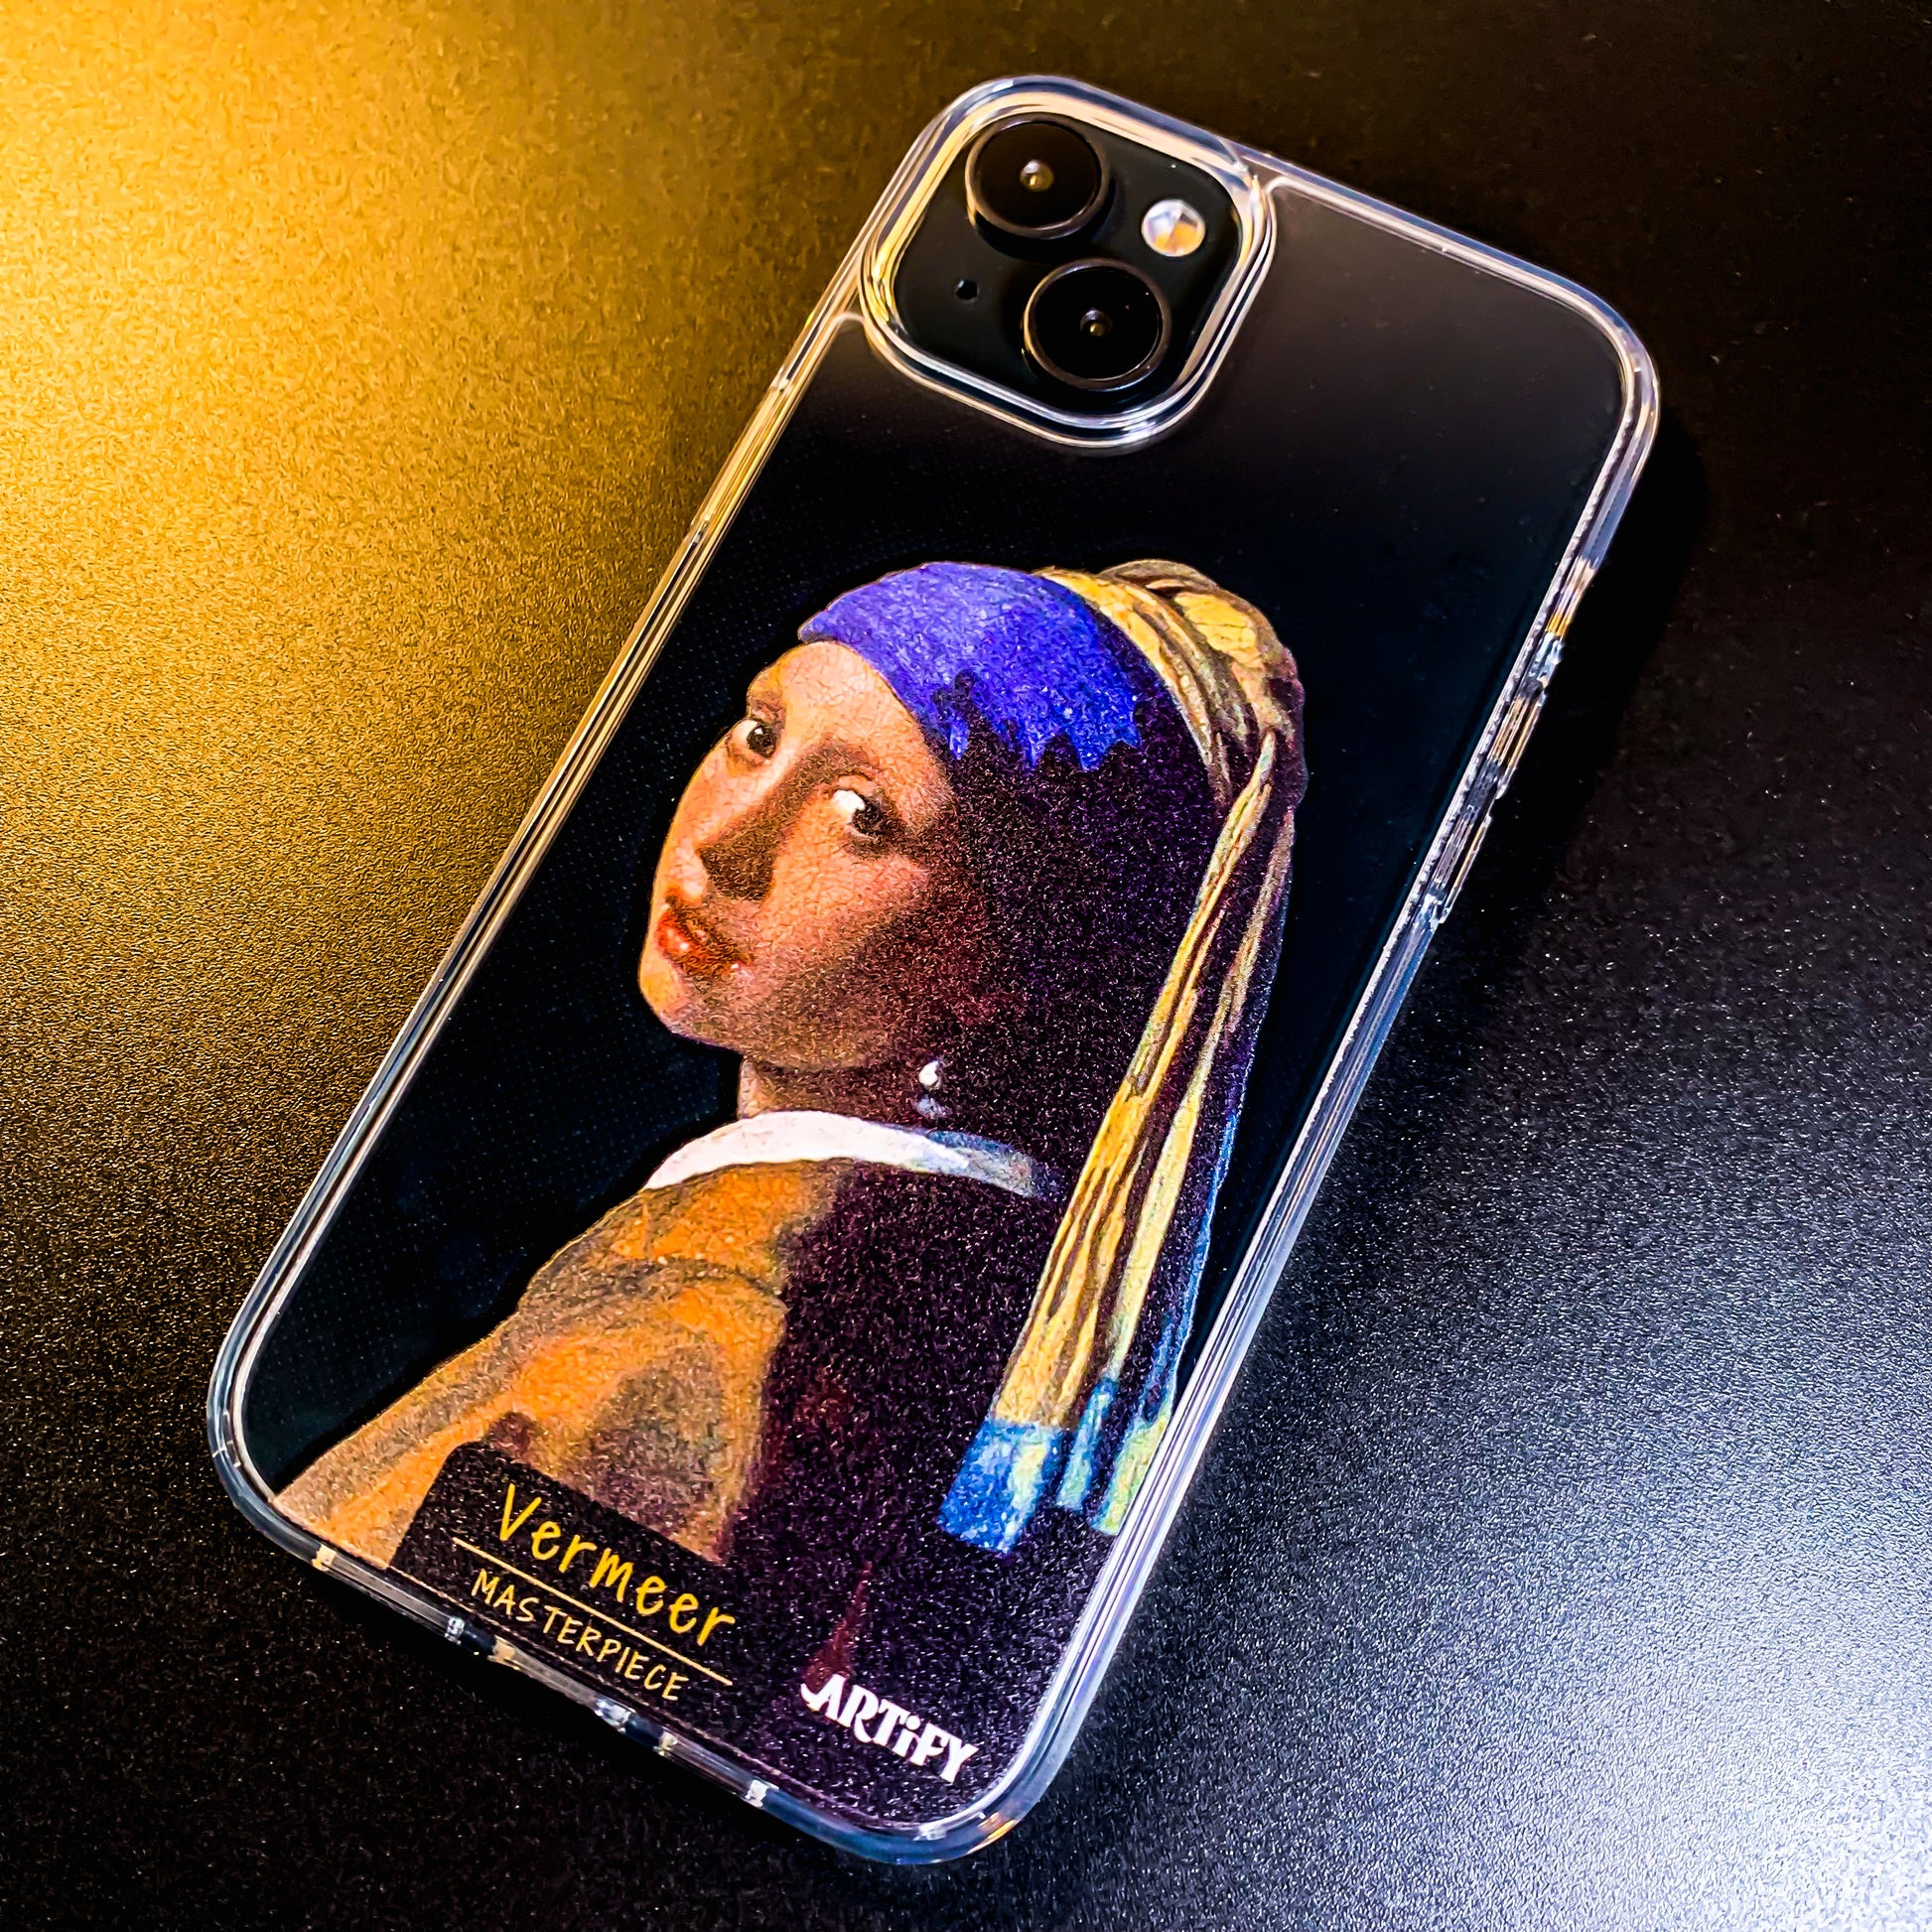 フェルメール 真珠の耳飾りの少女 iPhone ケース